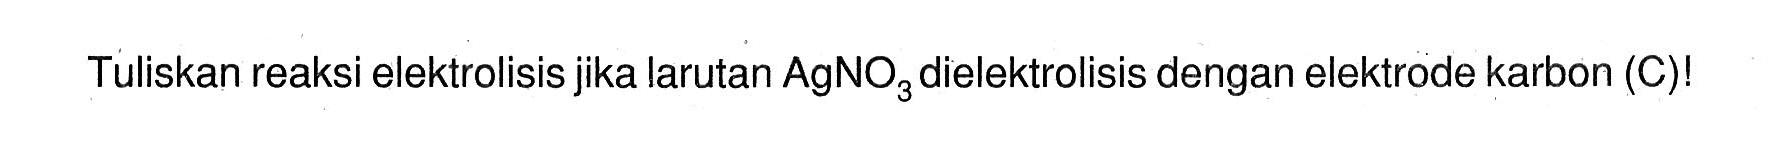 Tuliskan reaksi elektrolisis jika larutan AgNO3 dielektrolisis dengan elektrode karbon (C)!